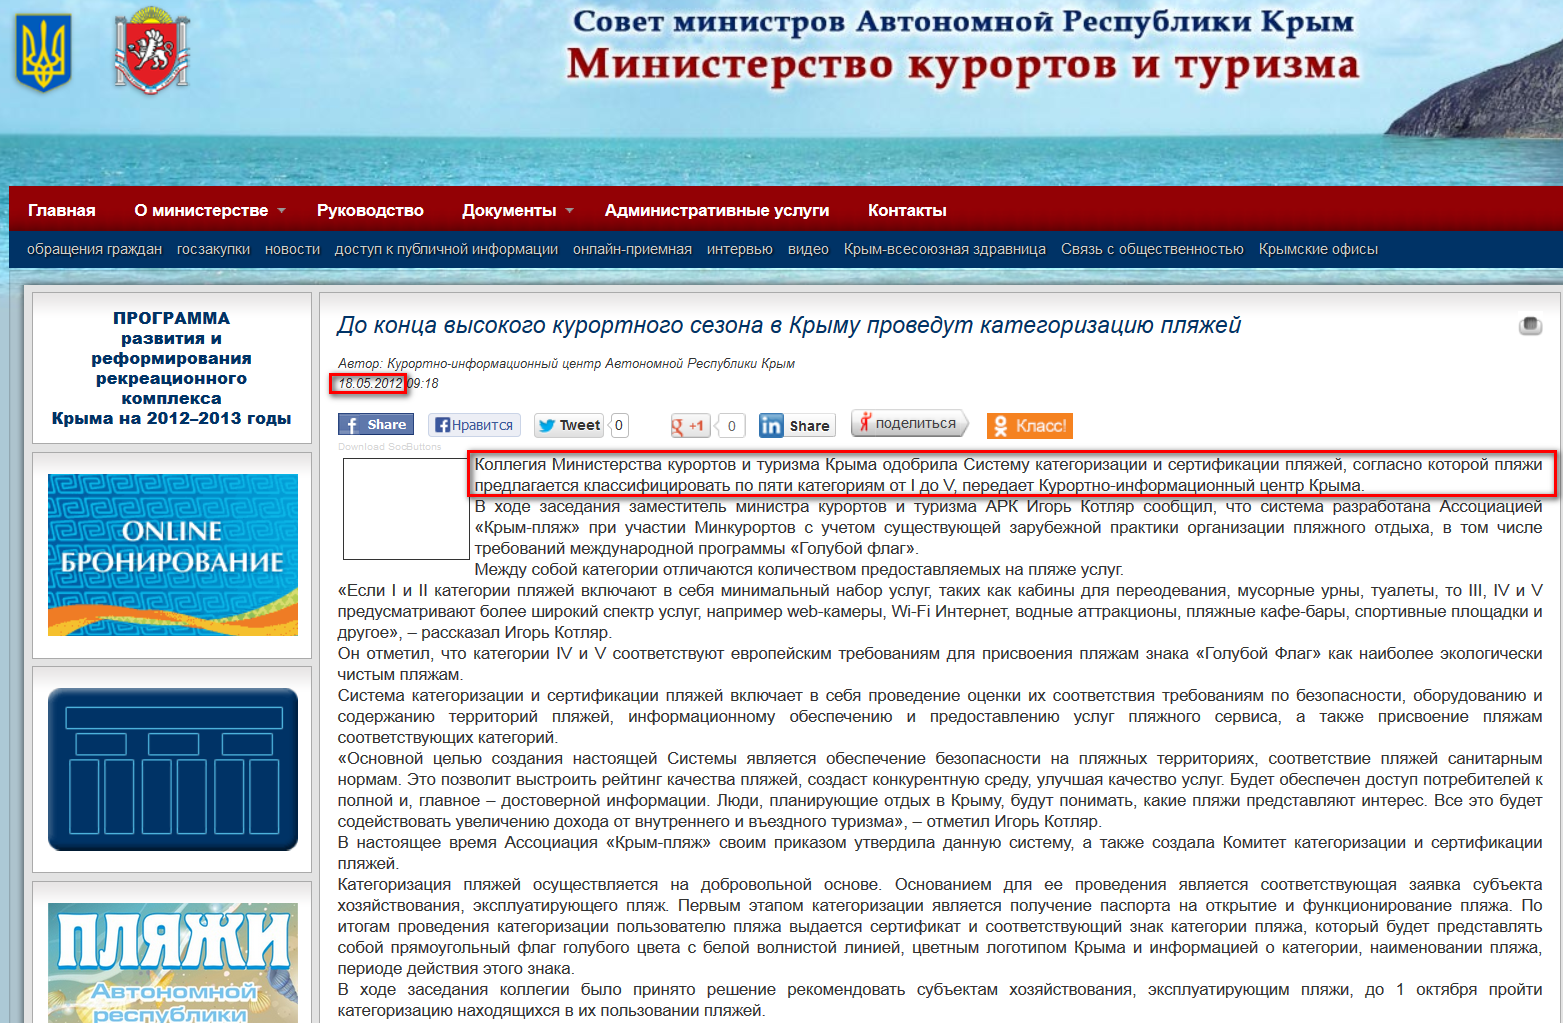 http://crimea.gov.ua/novosti/do-kontsa-visokogo-kurortnogo-sezona-v-krimu-provedut-kategorizatsiiu-plyazhey